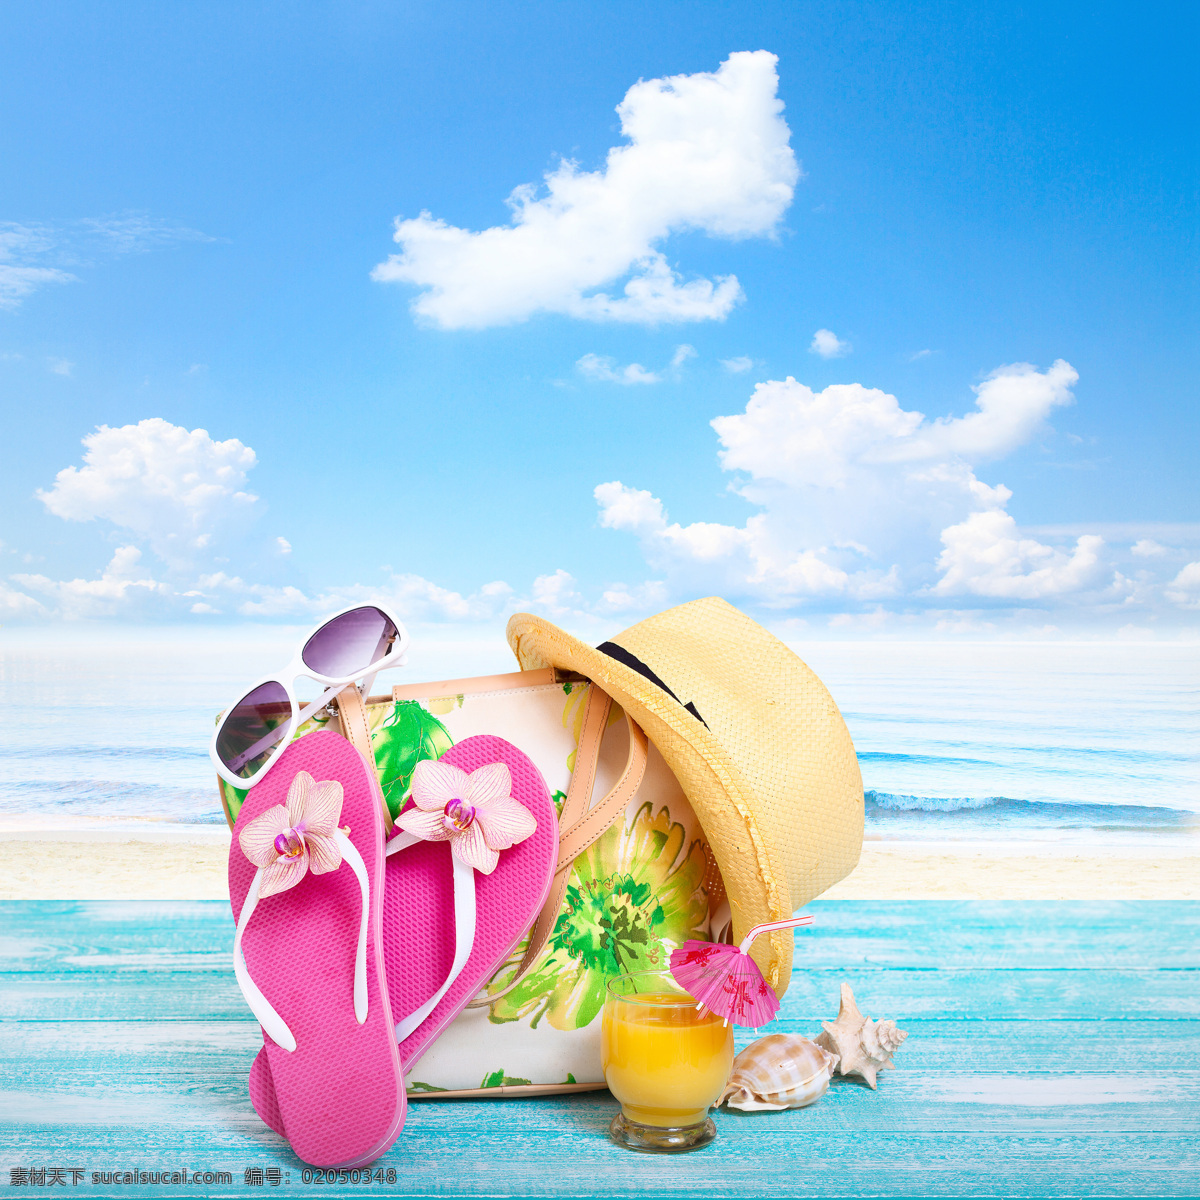 夏日女性用品 夏日 女性用品 帽子 手提袋 拖鞋 海螺 海洋海边 自然景观 白色